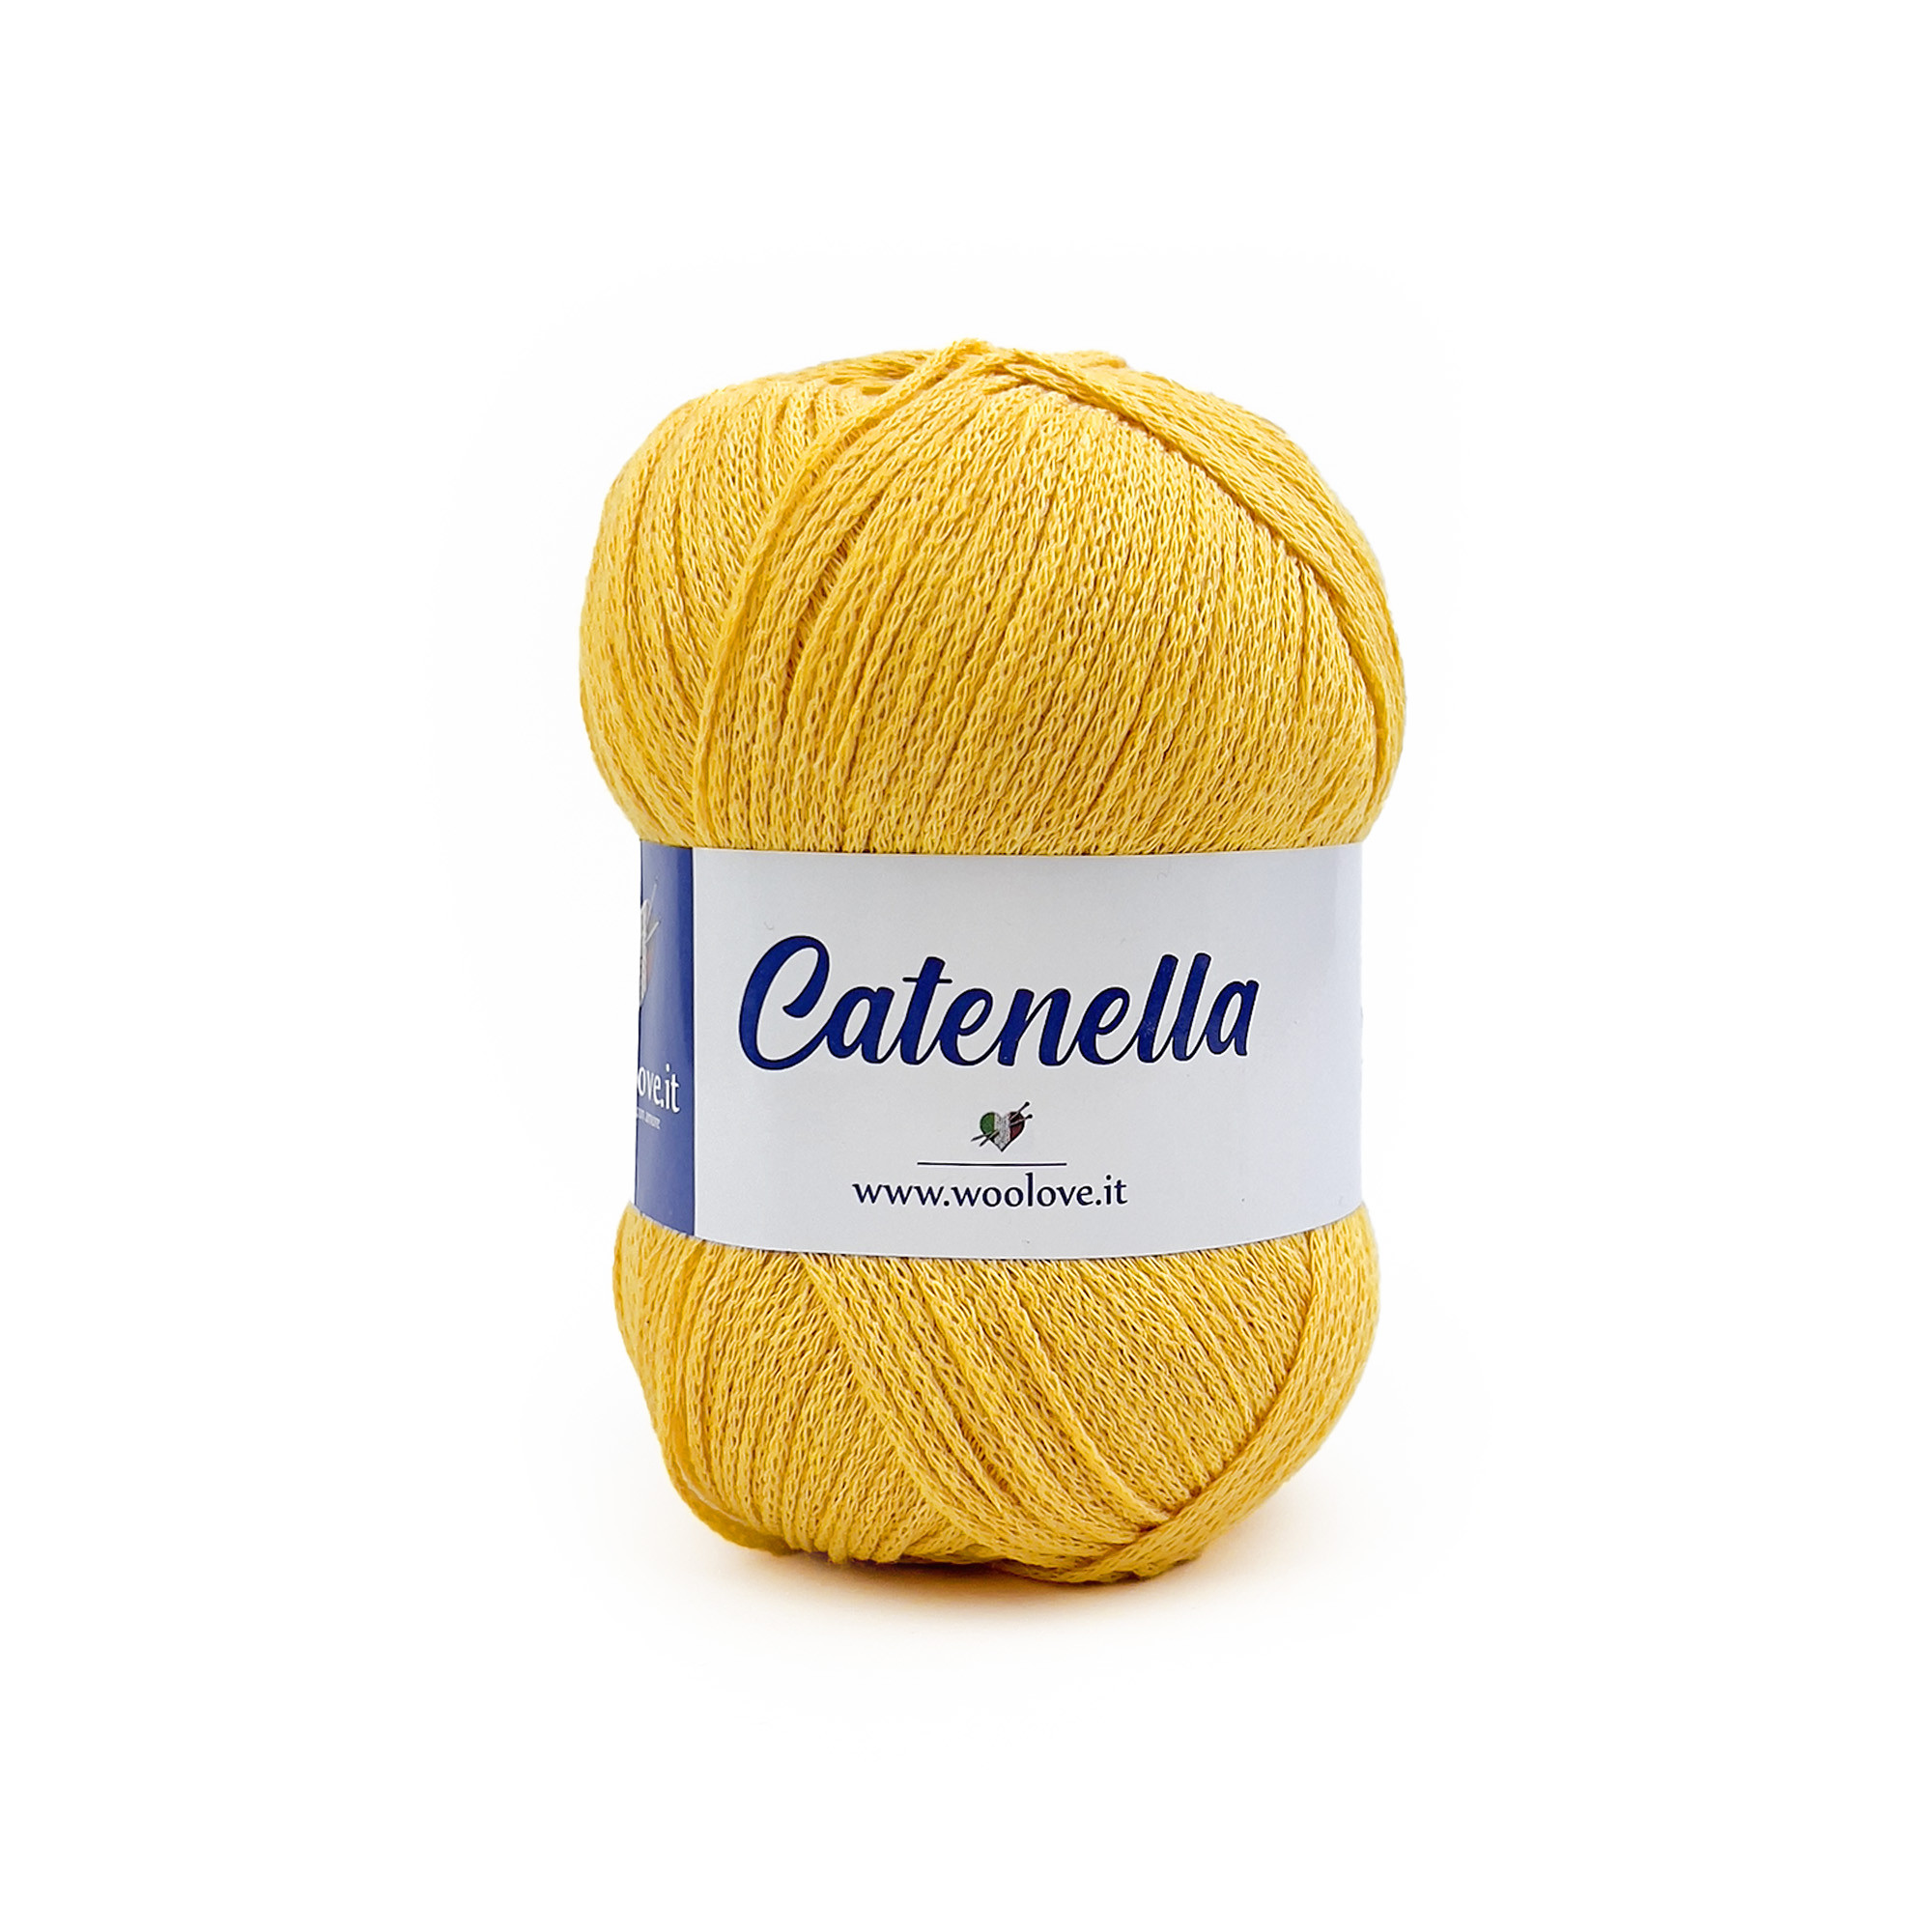 Catenella by Woolove - Filato misto cotone ideale per amigurumi